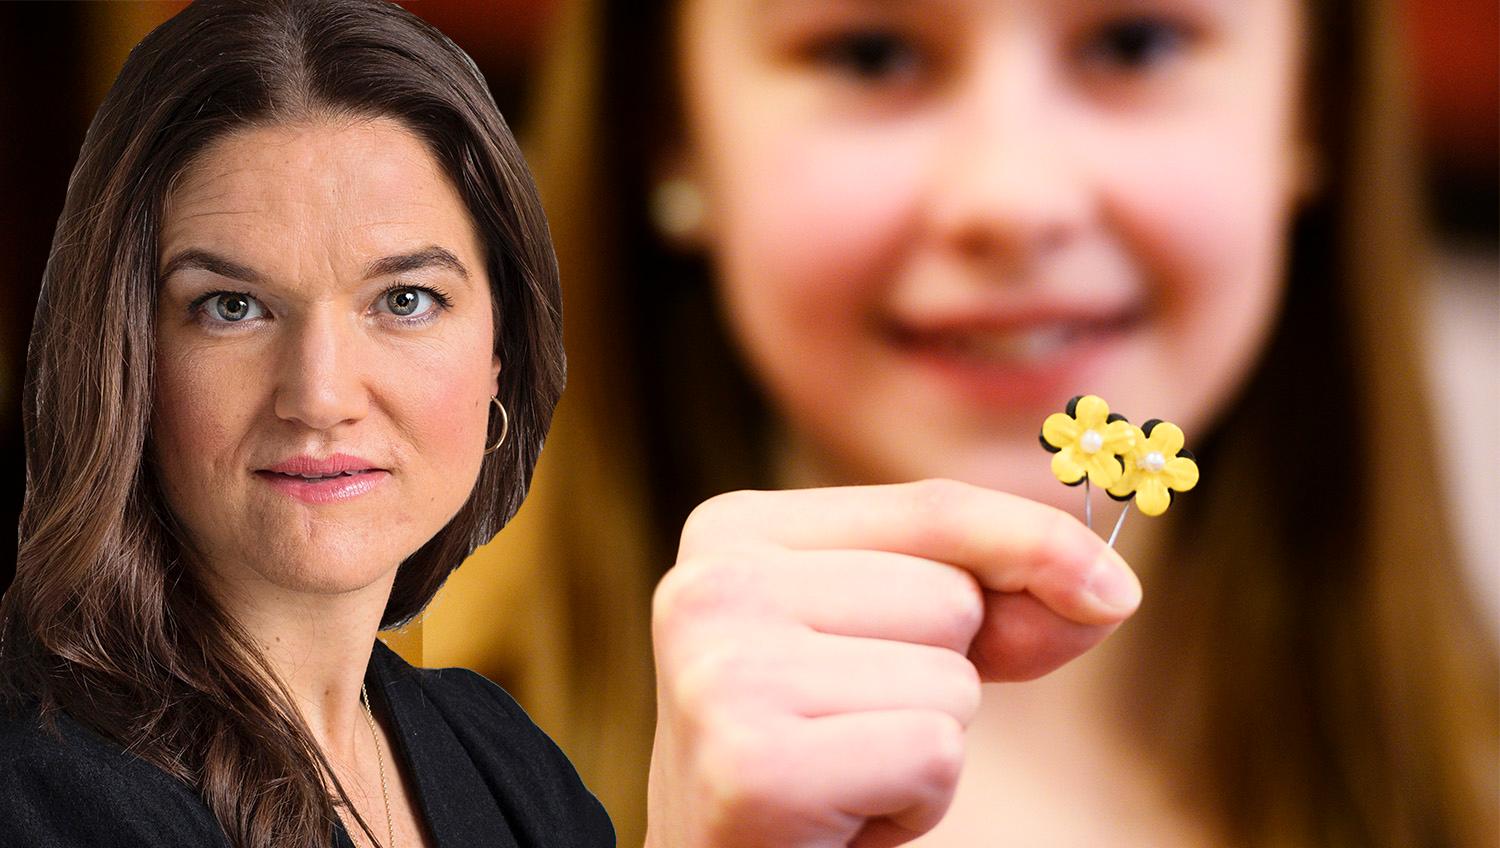 Årets majblomma går i svart och guld, färger som inspirerats av humlor. För formgivningen svarar Elina Hall, 12 år, från Göteborg, uppger Majblommans riksförbund.